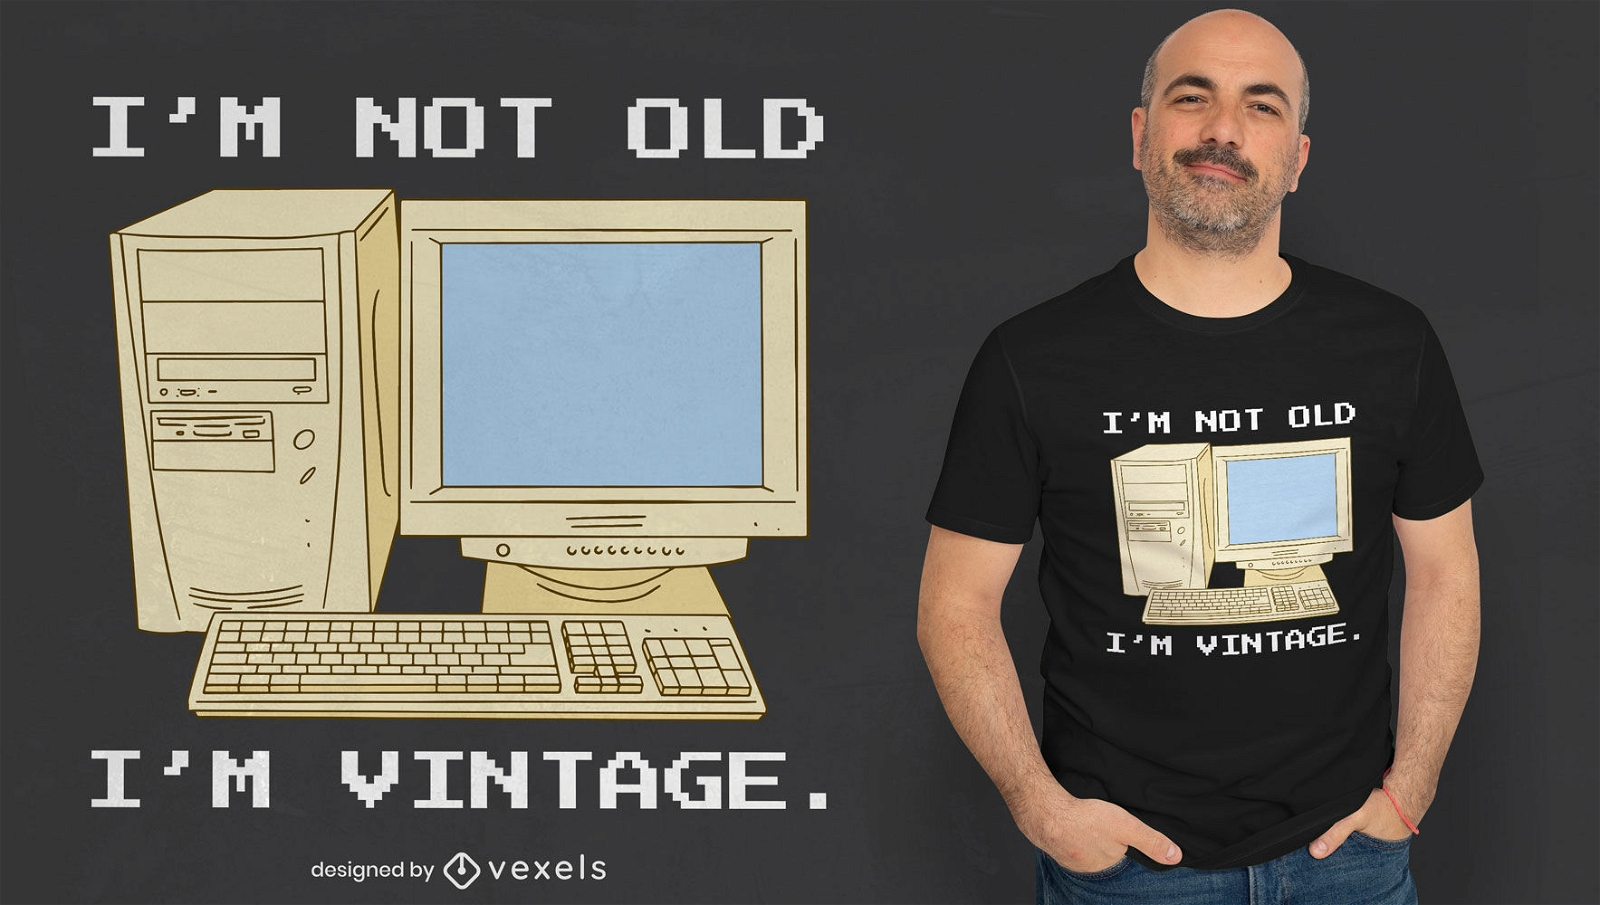 Vintage computer quote t-shirt design